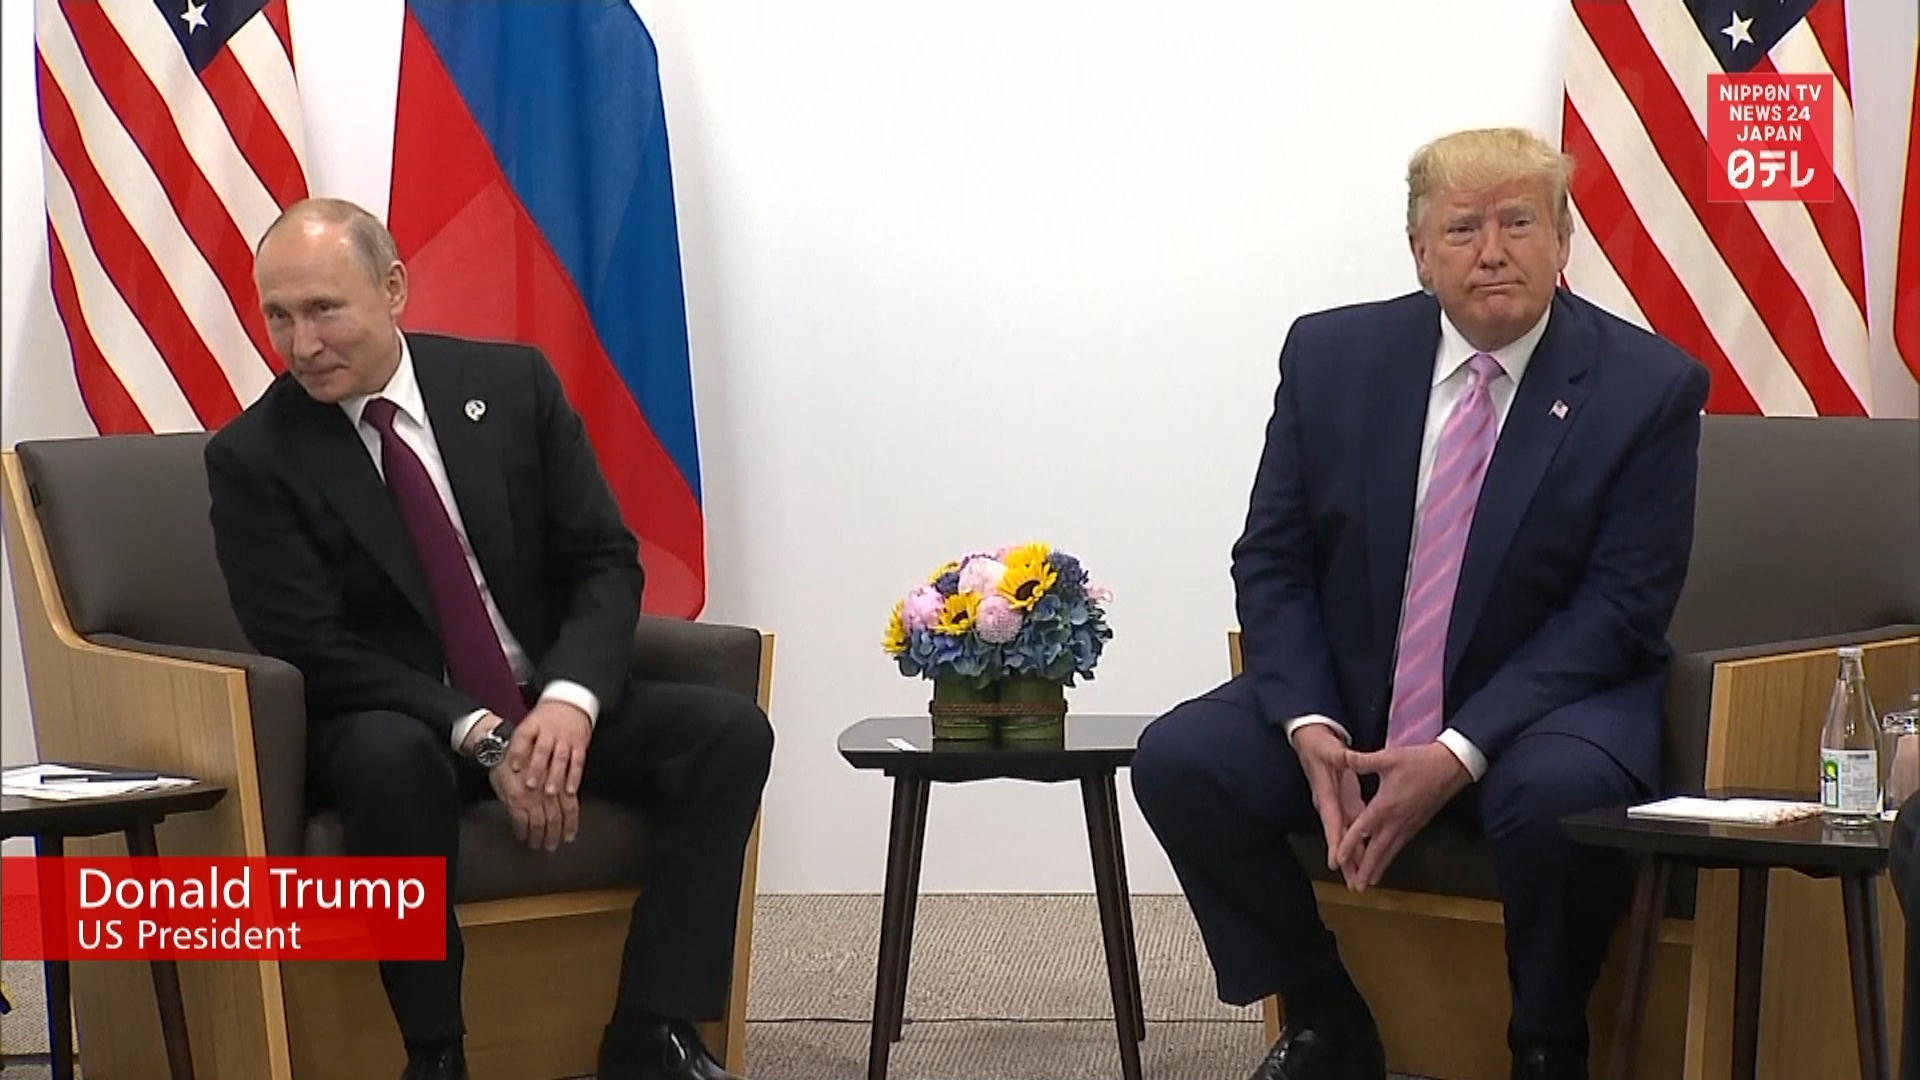 G20: Trump, Putin vow to improve ties